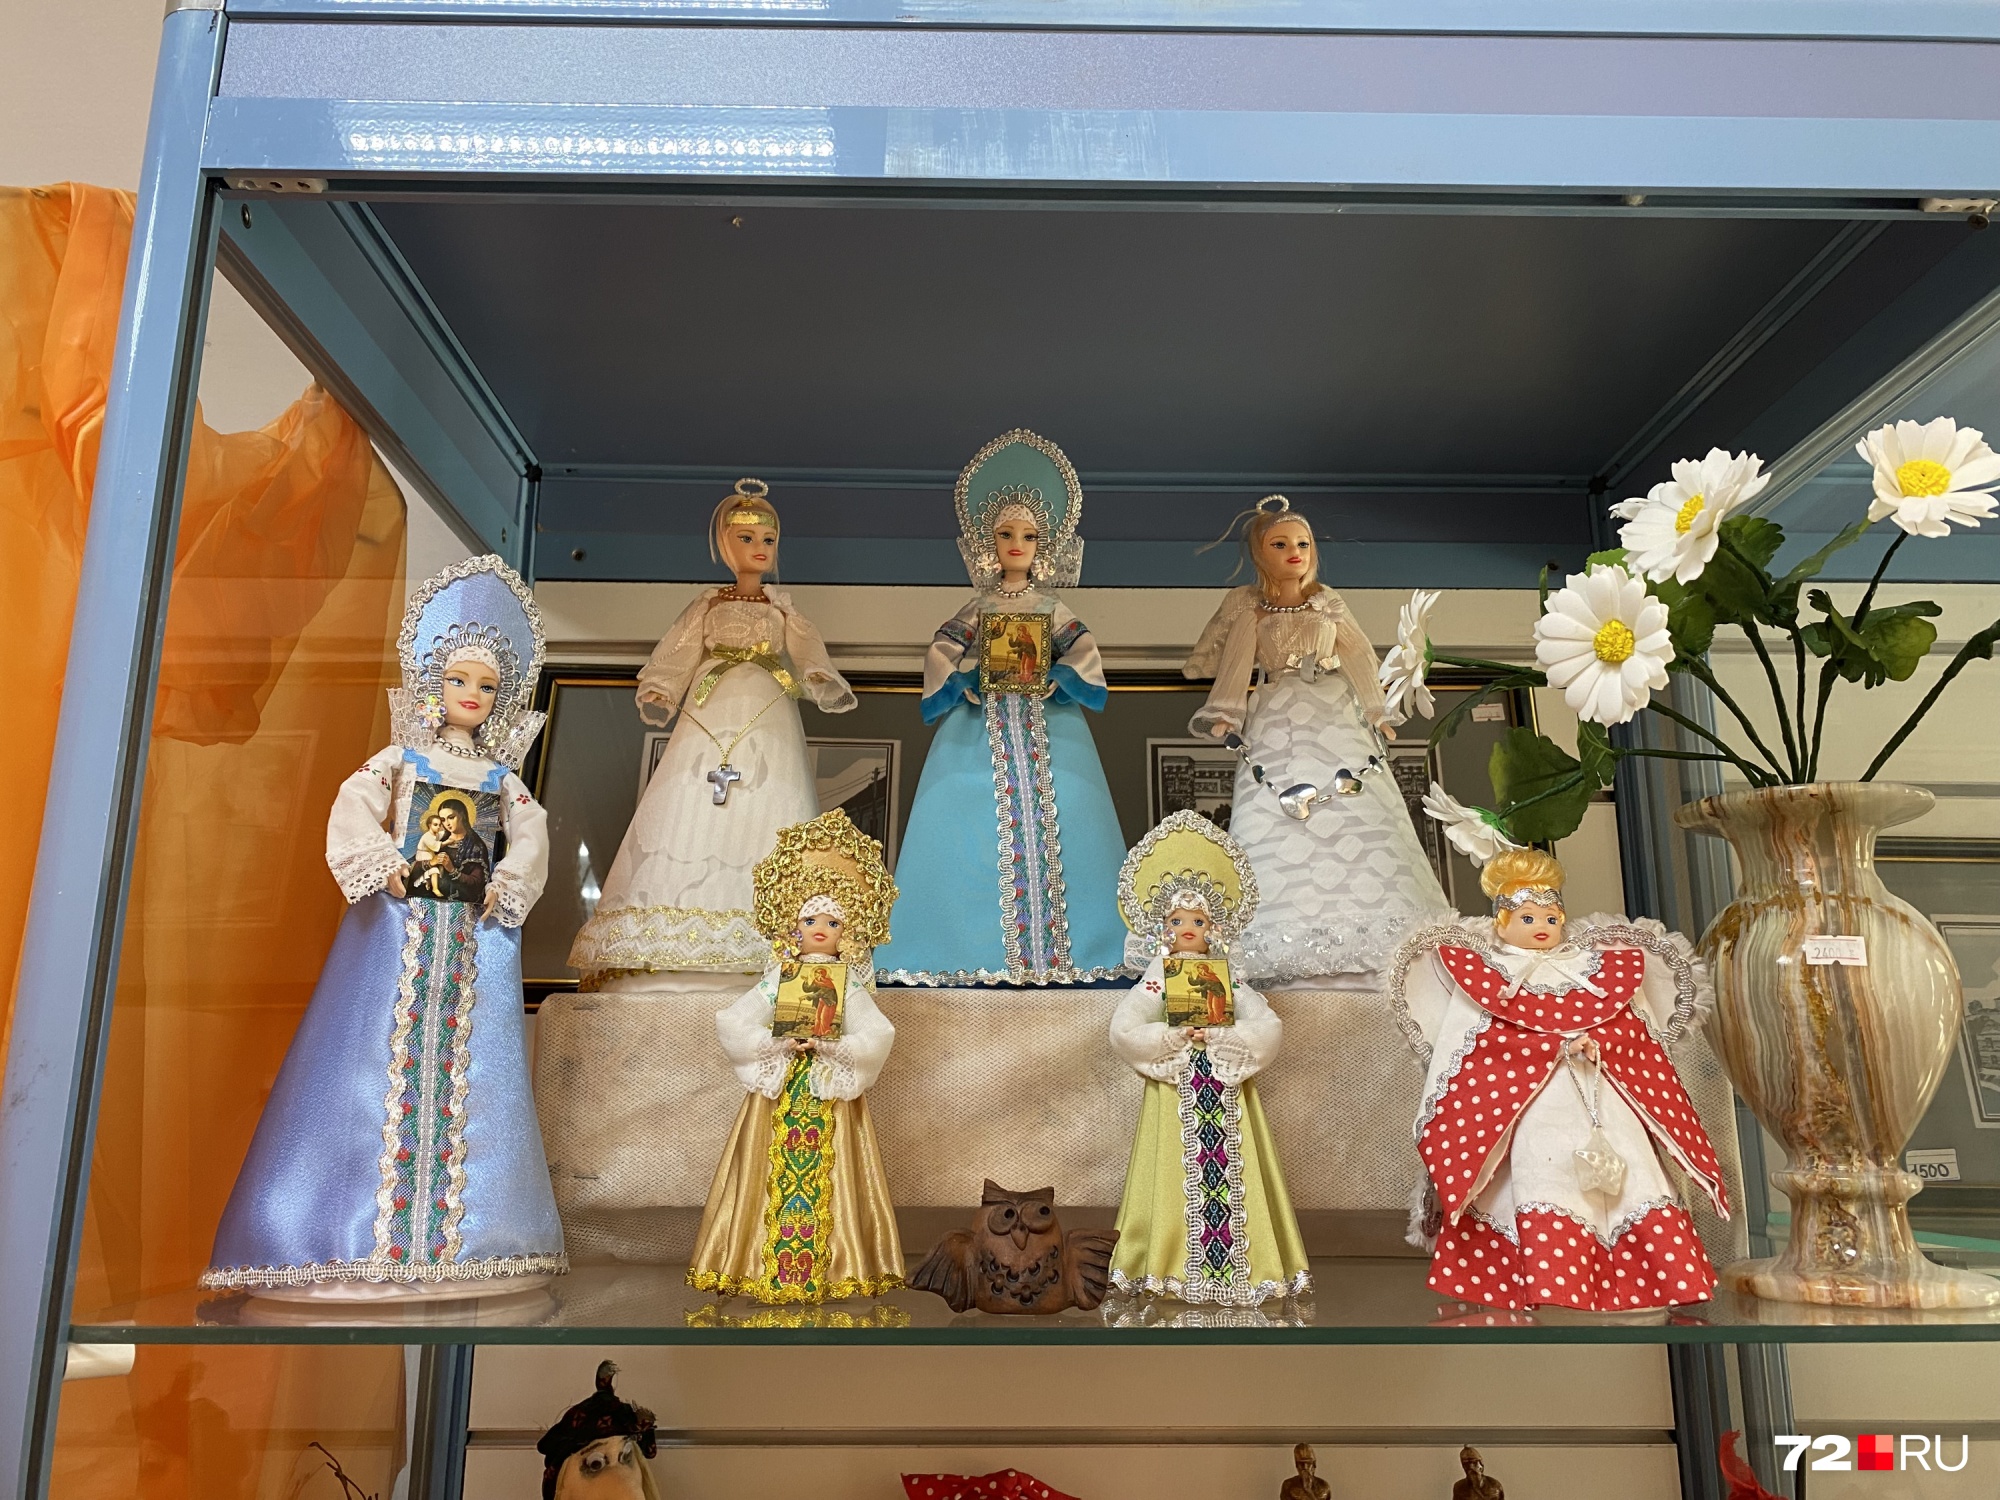 Куколки в кокошниках и сарафанах не продаются: они служат украшением витрины с сувенирами